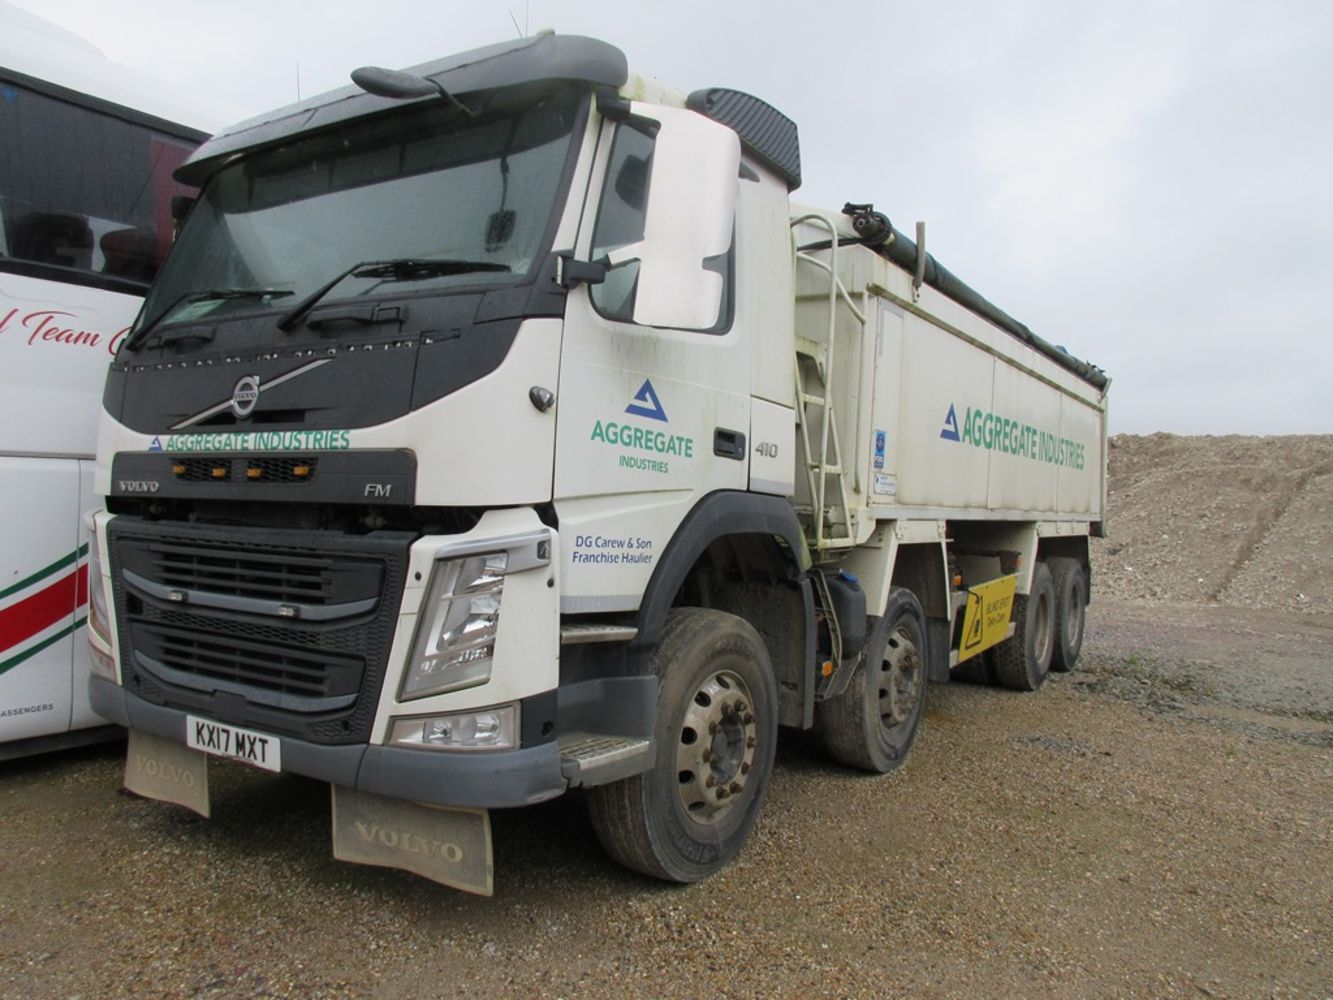 HGV block grab platform & tipper lorries, trailers, Ford back-hoe loader, workshop equipment, container, etc